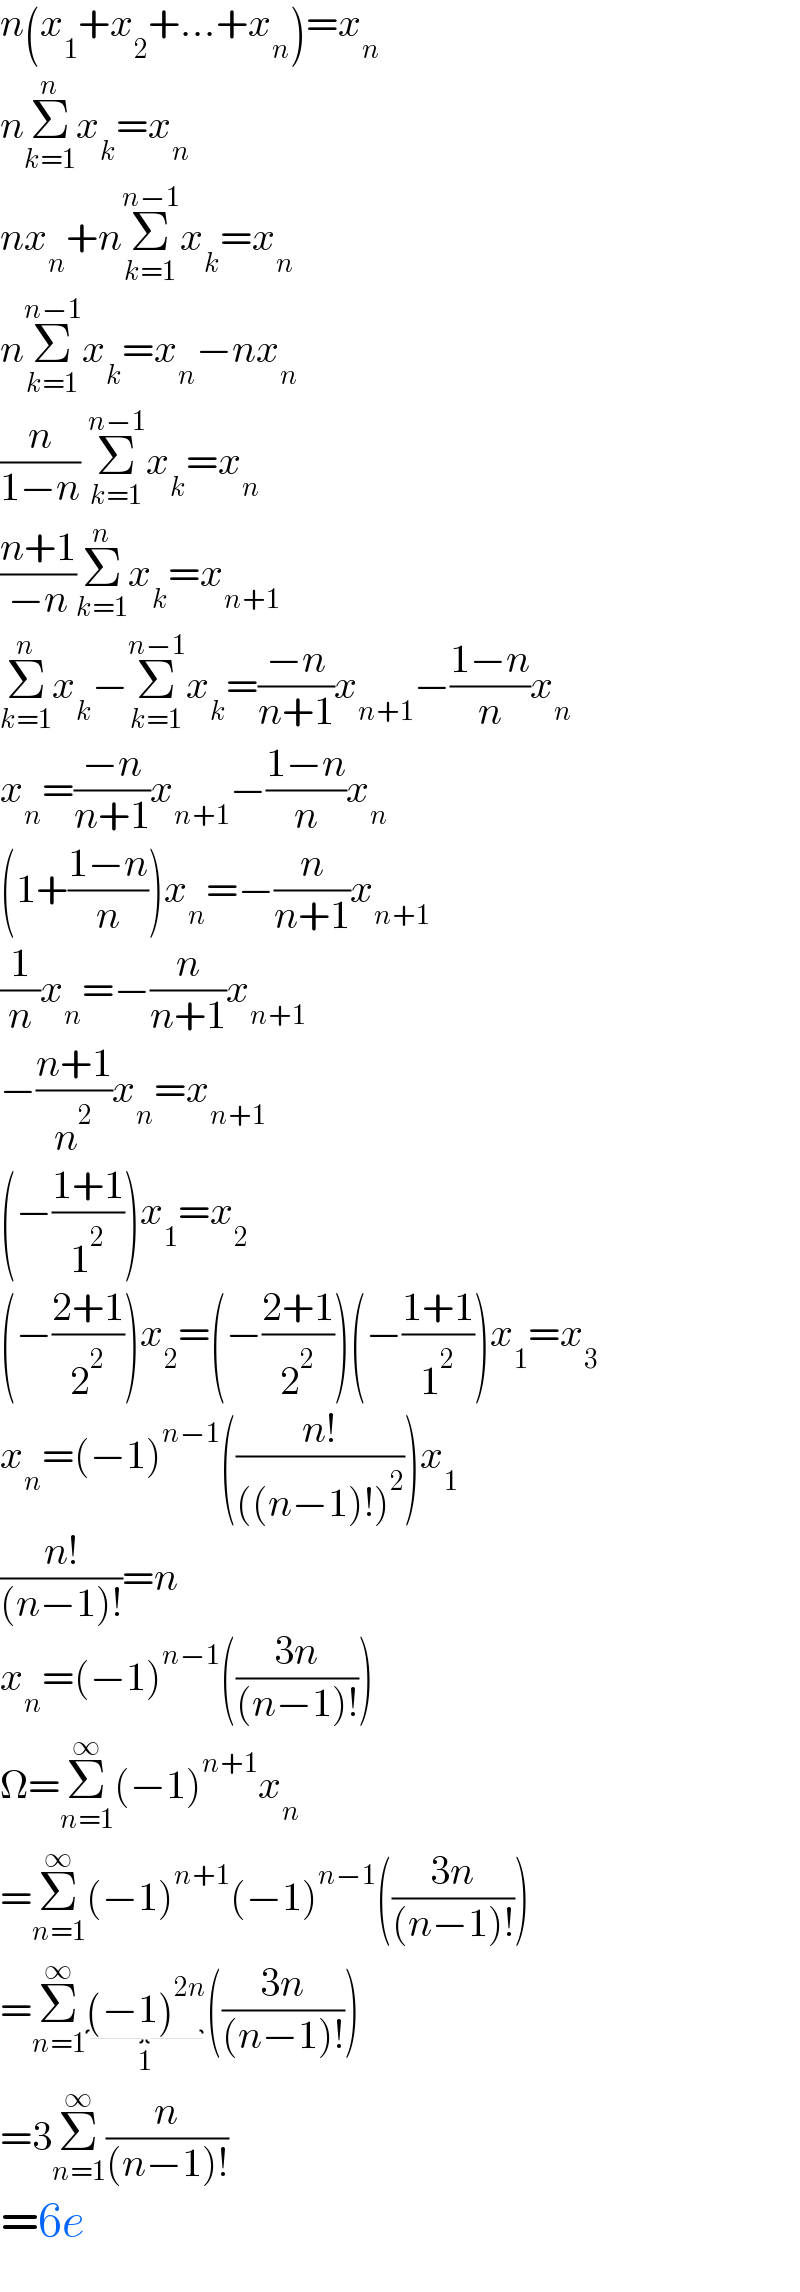 n(x_1 +x_2 +...+x_n )=x_n   nΣ_(k=1) ^n x_k =x_n   nx_n +nΣ_(k=1) ^(n−1) x_k =x_n   nΣ_(k=1) ^(n−1) x_k =x_n −nx_n   (n/(1−n)) Σ_(k=1) ^(n−1) x_k =x_n   ((n+1)/(−n))Σ_(k=1) ^n x_k =x_(n+1)   Σ_(k=1) ^n x_k −Σ_(k=1) ^(n−1) x_k =((−n)/(n+1))x_(n+1) −((1−n)/n)x_n   x_n =((−n)/(n+1))x_(n+1) −((1−n)/n)x_n   (1+((1−n)/n))x_n =−(n/(n+1))x_(n+1)   (1/n)x_n =−(n/(n+1))x_(n+1)   −((n+1)/n^2 )x_n =x_(n+1)   (−((1+1)/1^2 ))x_1 =x_2   (−((2+1)/2^2 ))x_2 =(−((2+1)/2^2 ))(−((1+1)/1^2 ))x_1 =x_3   x_n =(−1)^(n−1) (((n!)/(((n−1)!)^2 )))x_1   ((n!)/((n−1)!))=n  x_n =(−1)^(n−1) (((3n)/((n−1)!)))  Ω=Σ_(n=1) ^∞ (−1)^(n+1) x_n   =Σ_(n=1) ^∞ (−1)^(n+1) (−1)^(n−1) (((3n)/((n−1)!)))  =Σ_(n=1) ^∞ (−1)^(2n) _(1) (((3n)/((n−1)!)))  =3Σ_(n=1) ^∞ (n/((n−1)!))  =6e  